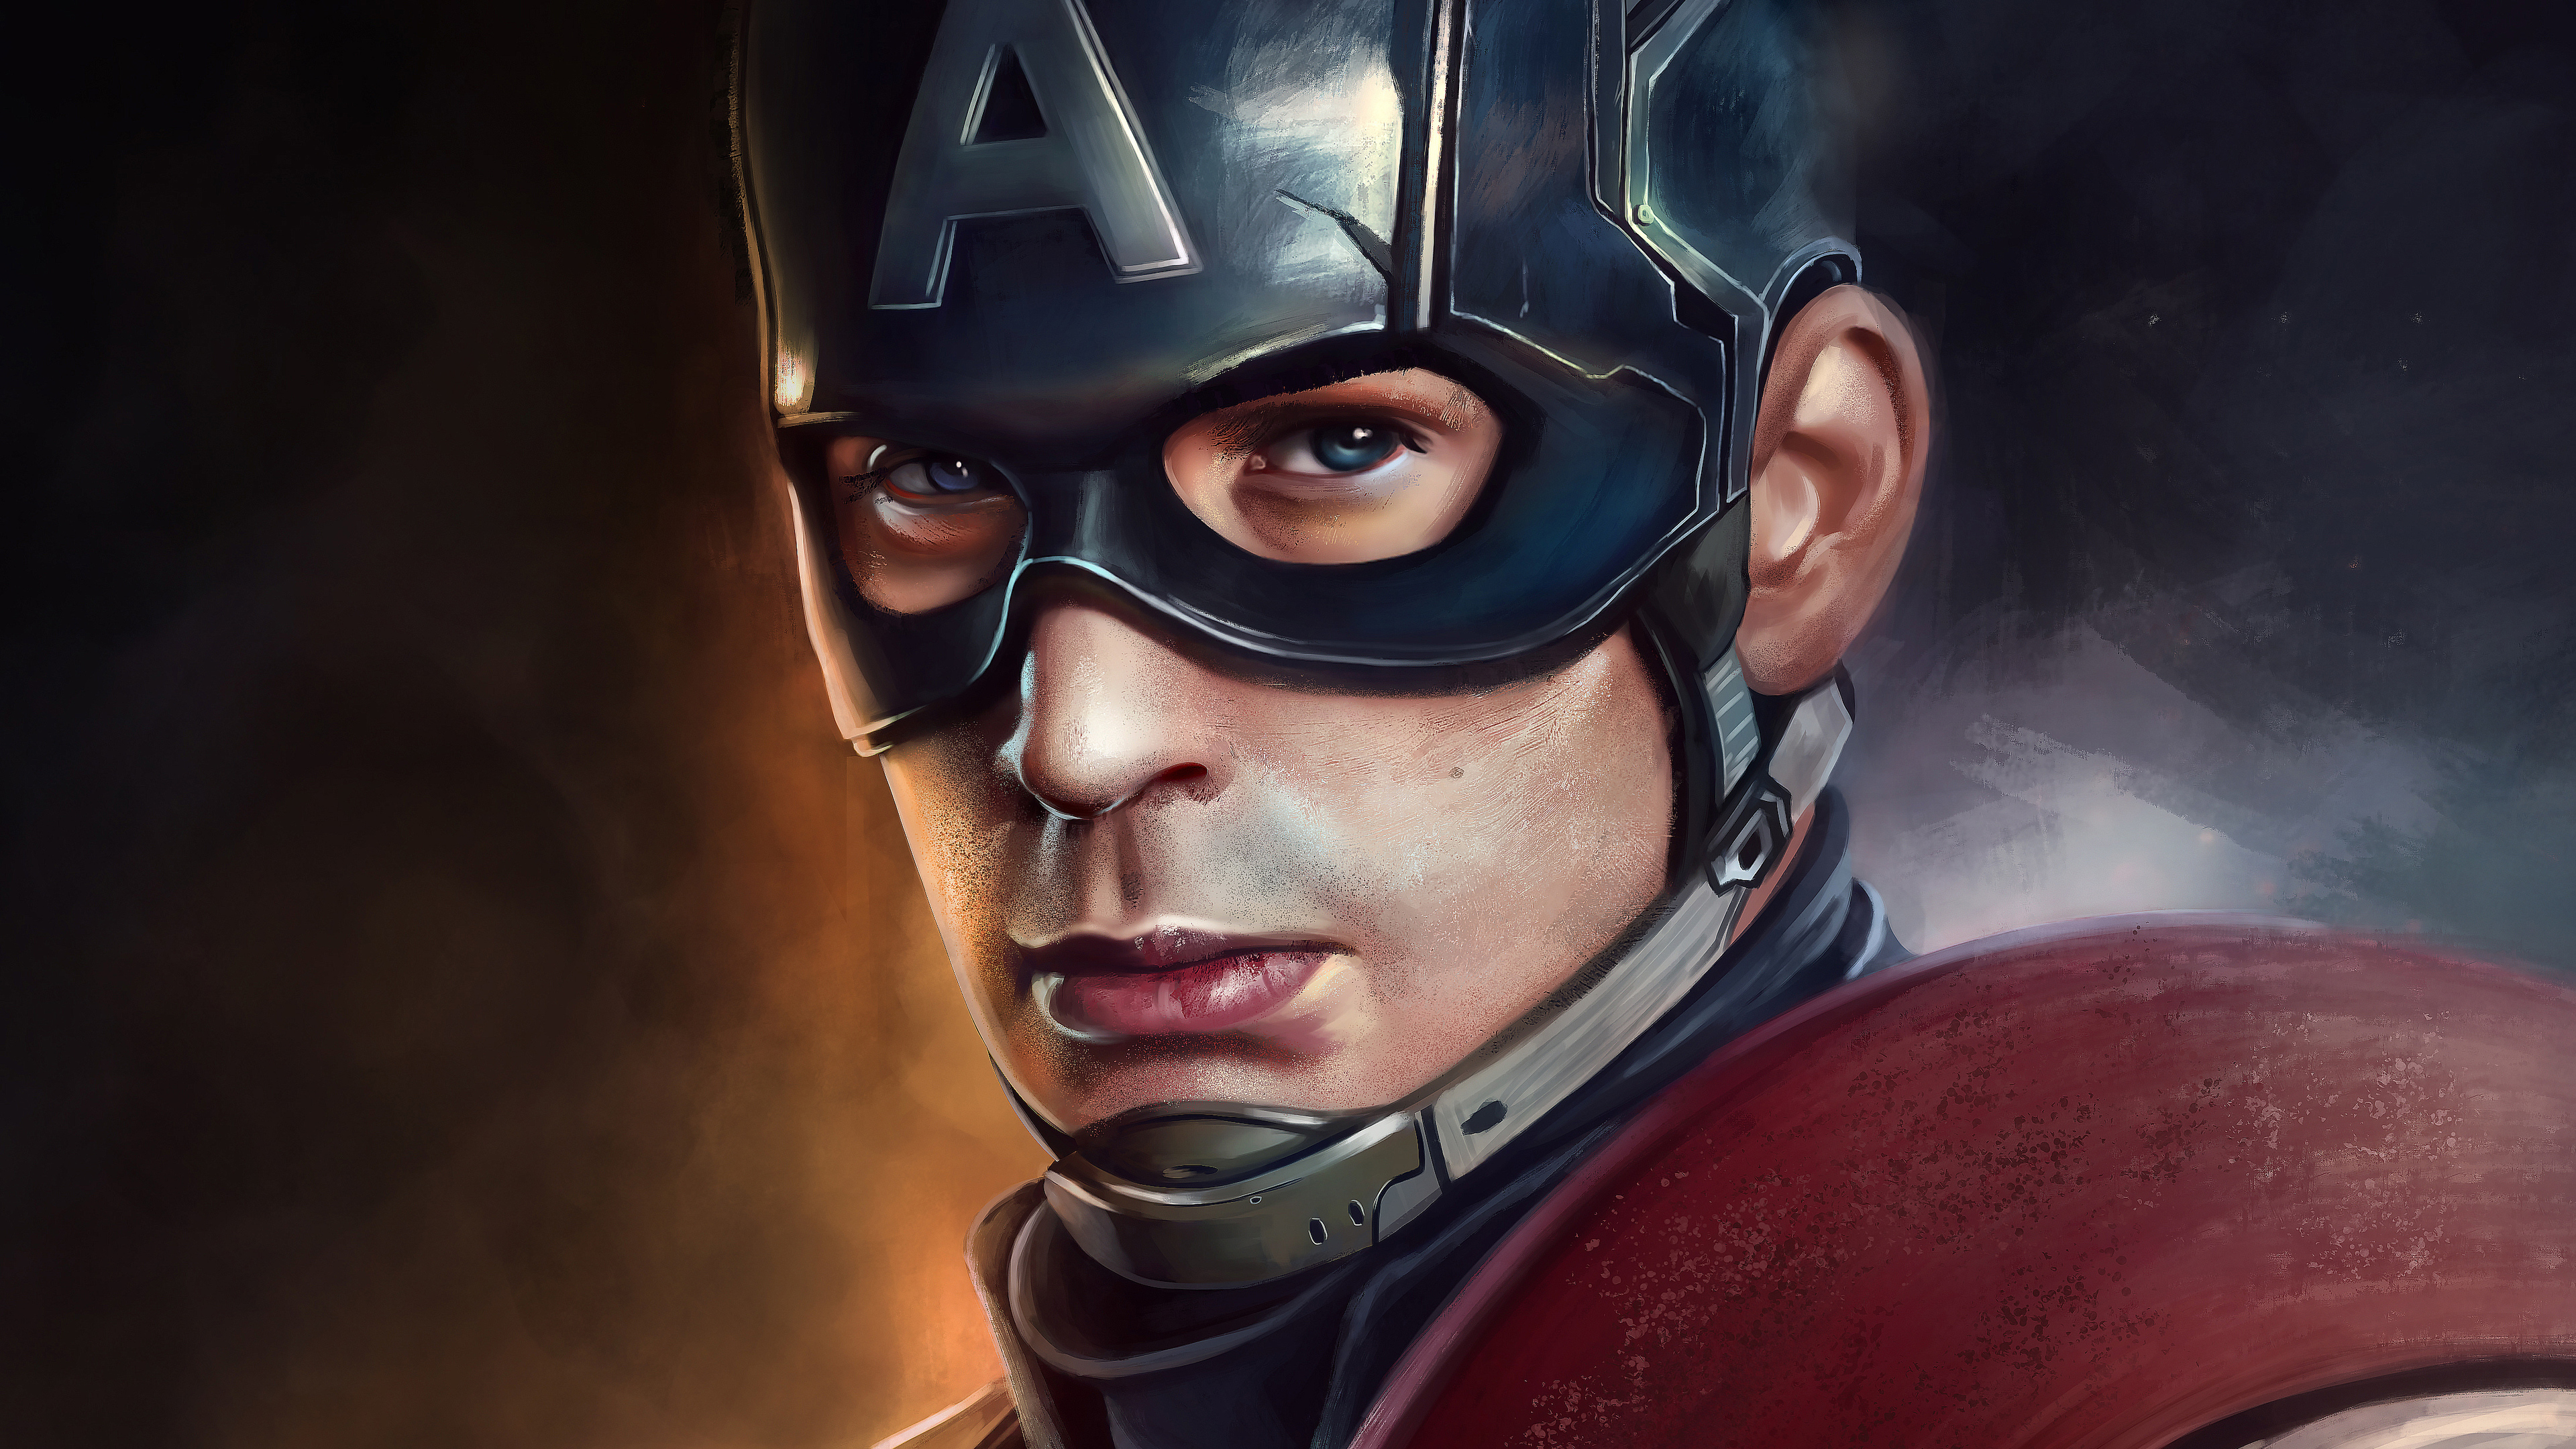 Captain America 4K Digital Art Wallpapers